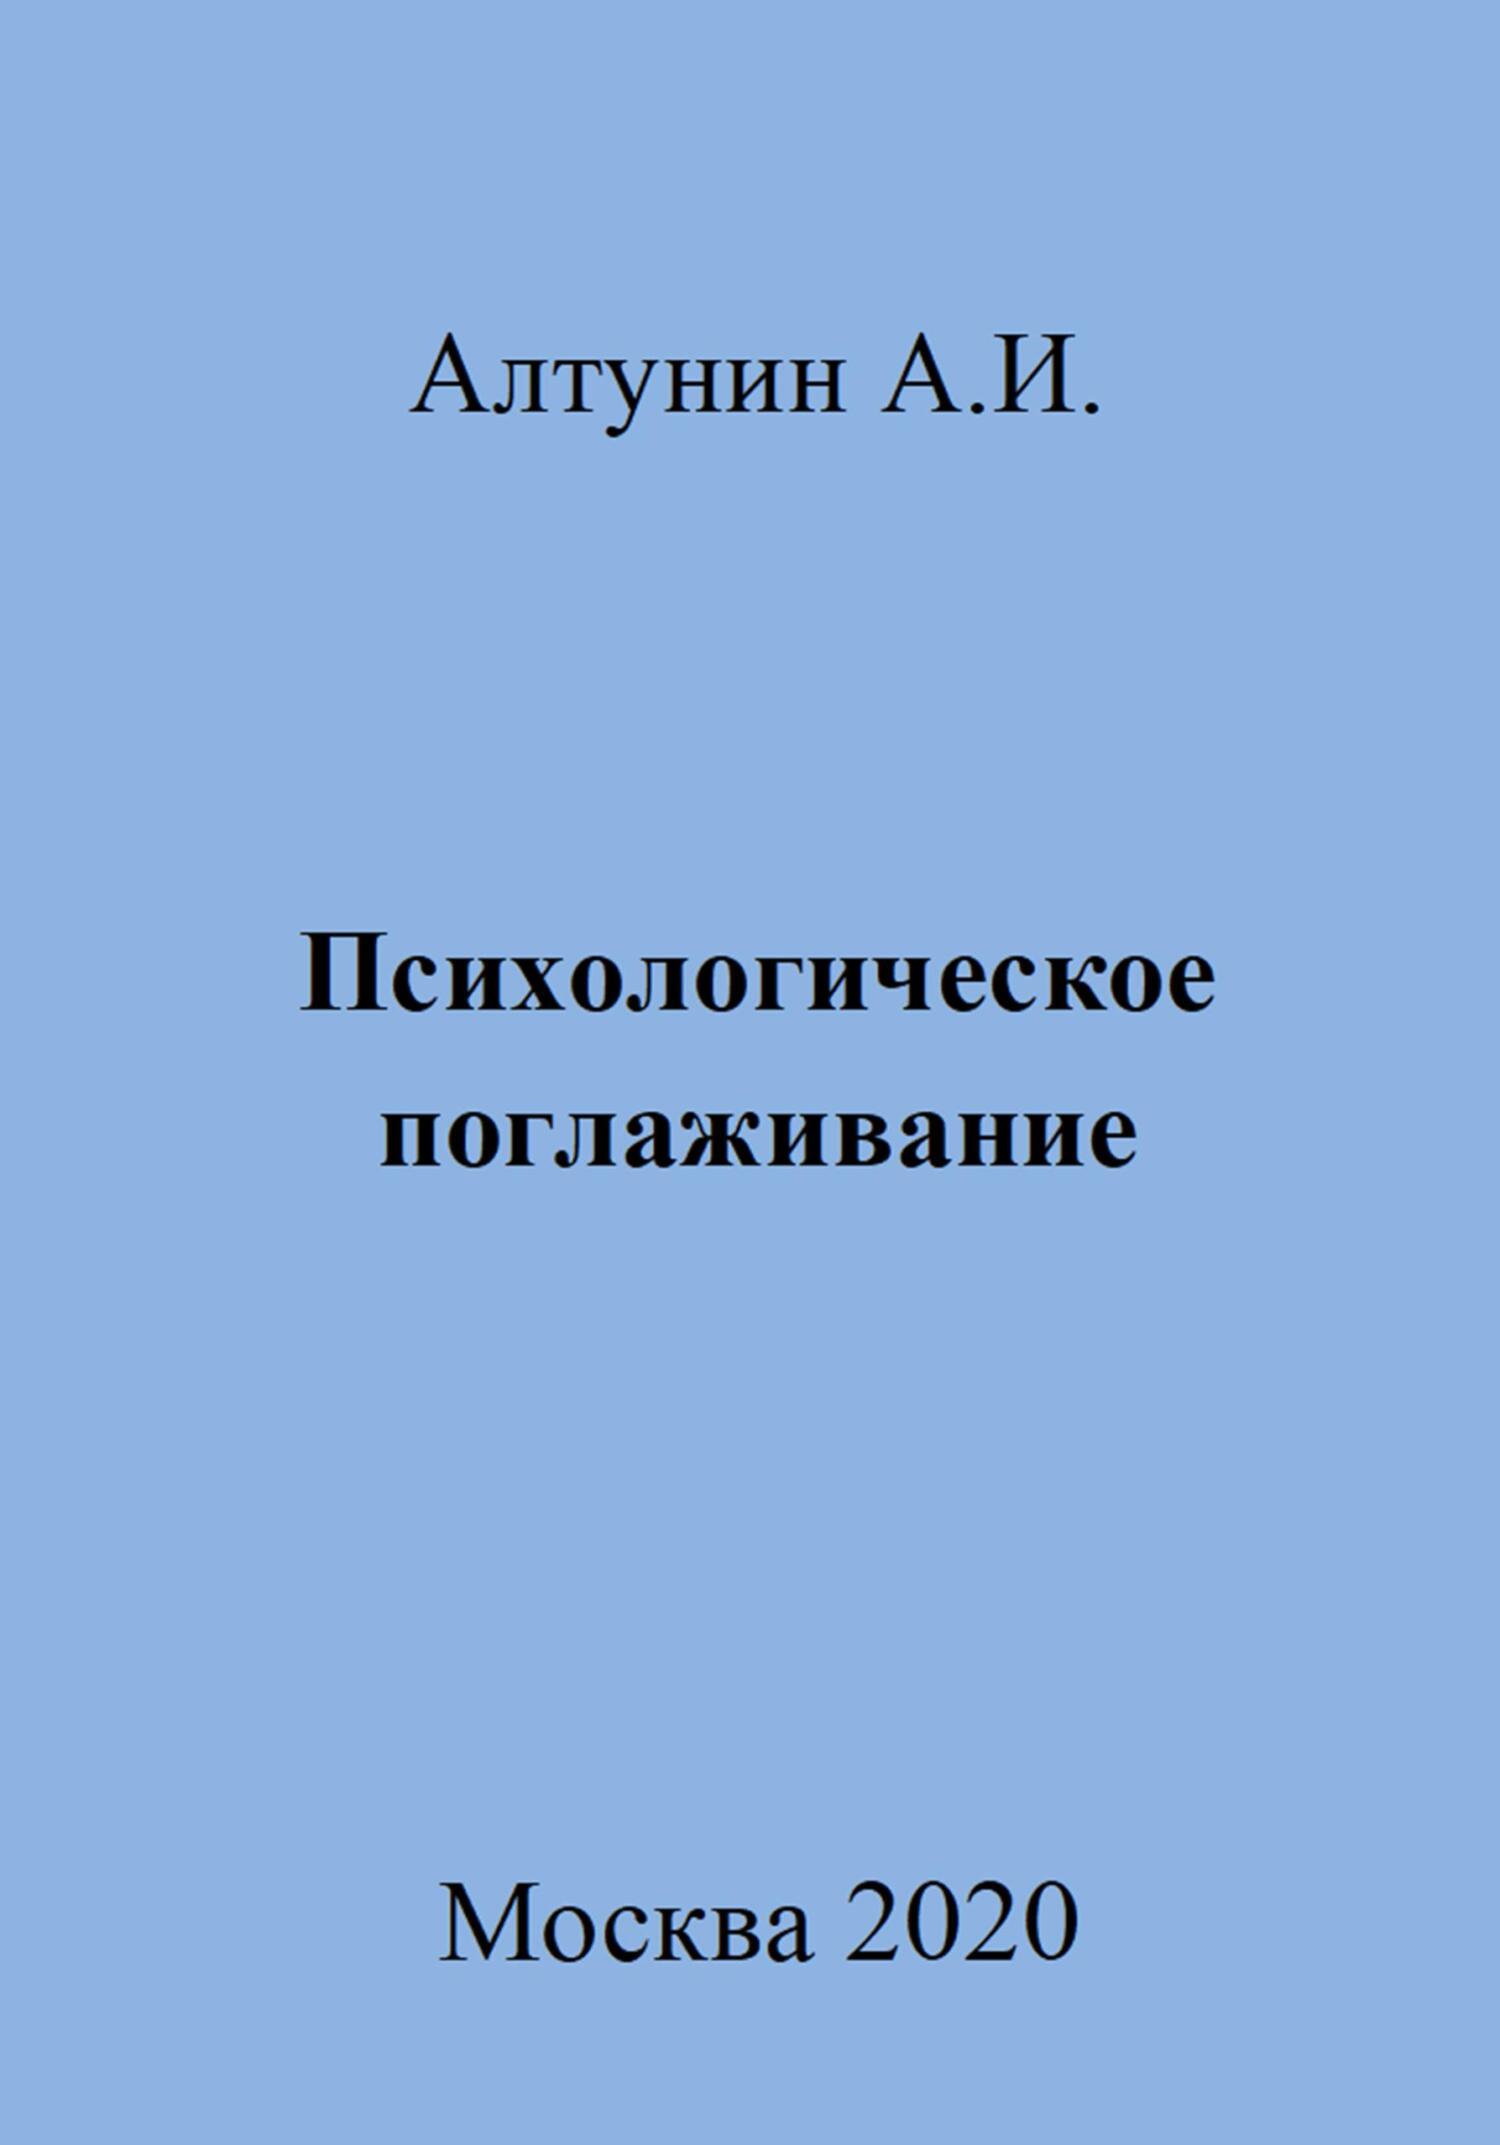 Психологическое поглаживание - Александр Иванович Алтунин